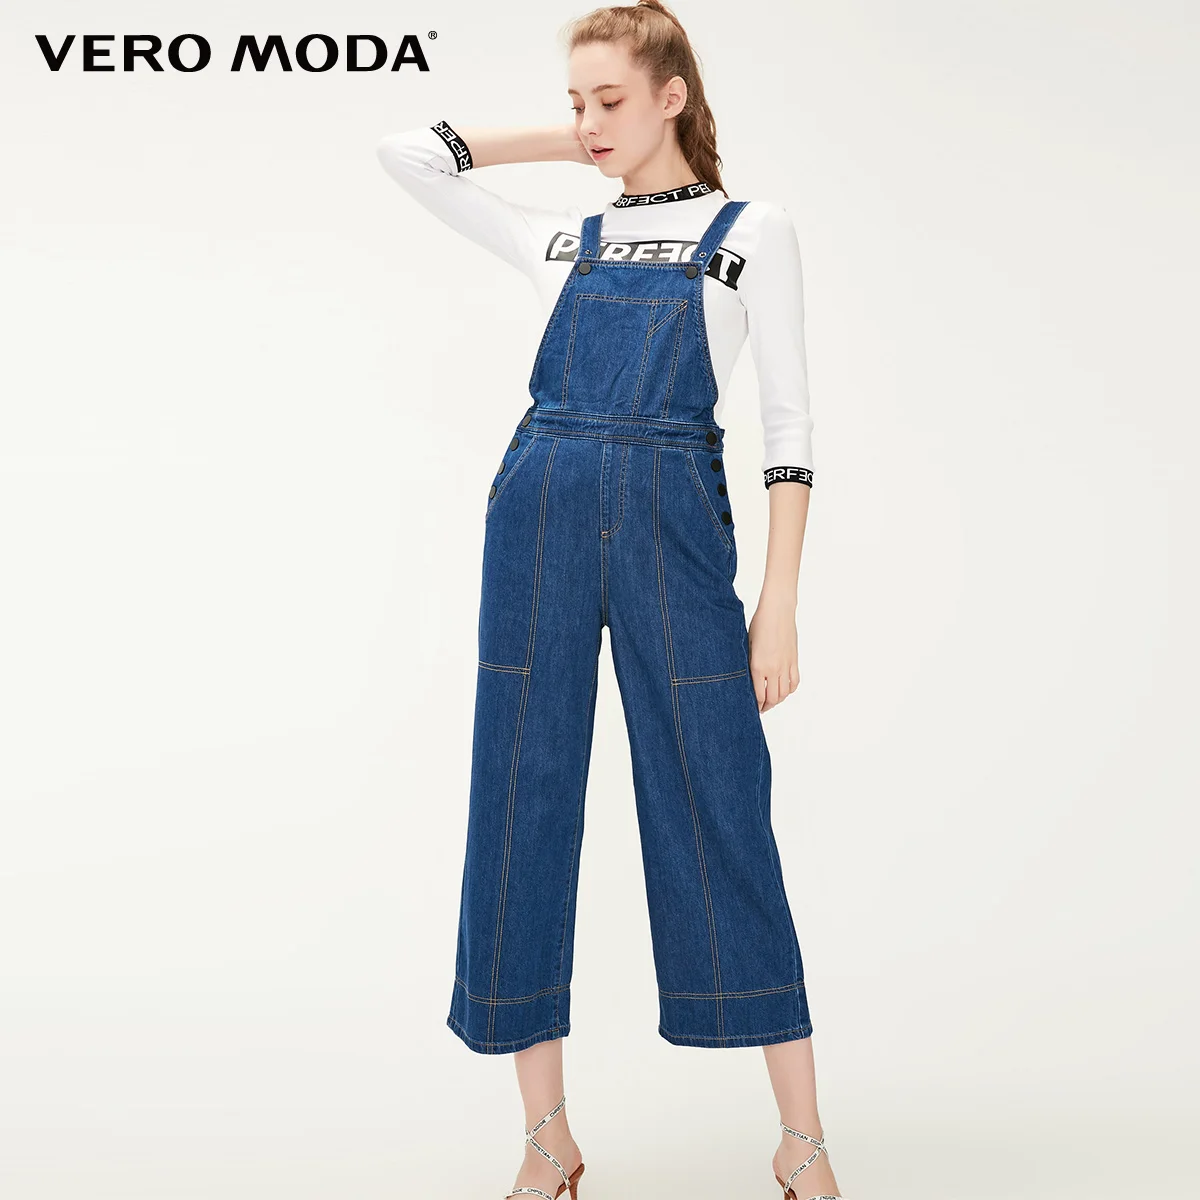 Vero Moda женские хлопковые широкие комбинезоны джинсы | 319164501 - Цвет: Indigo blue denim